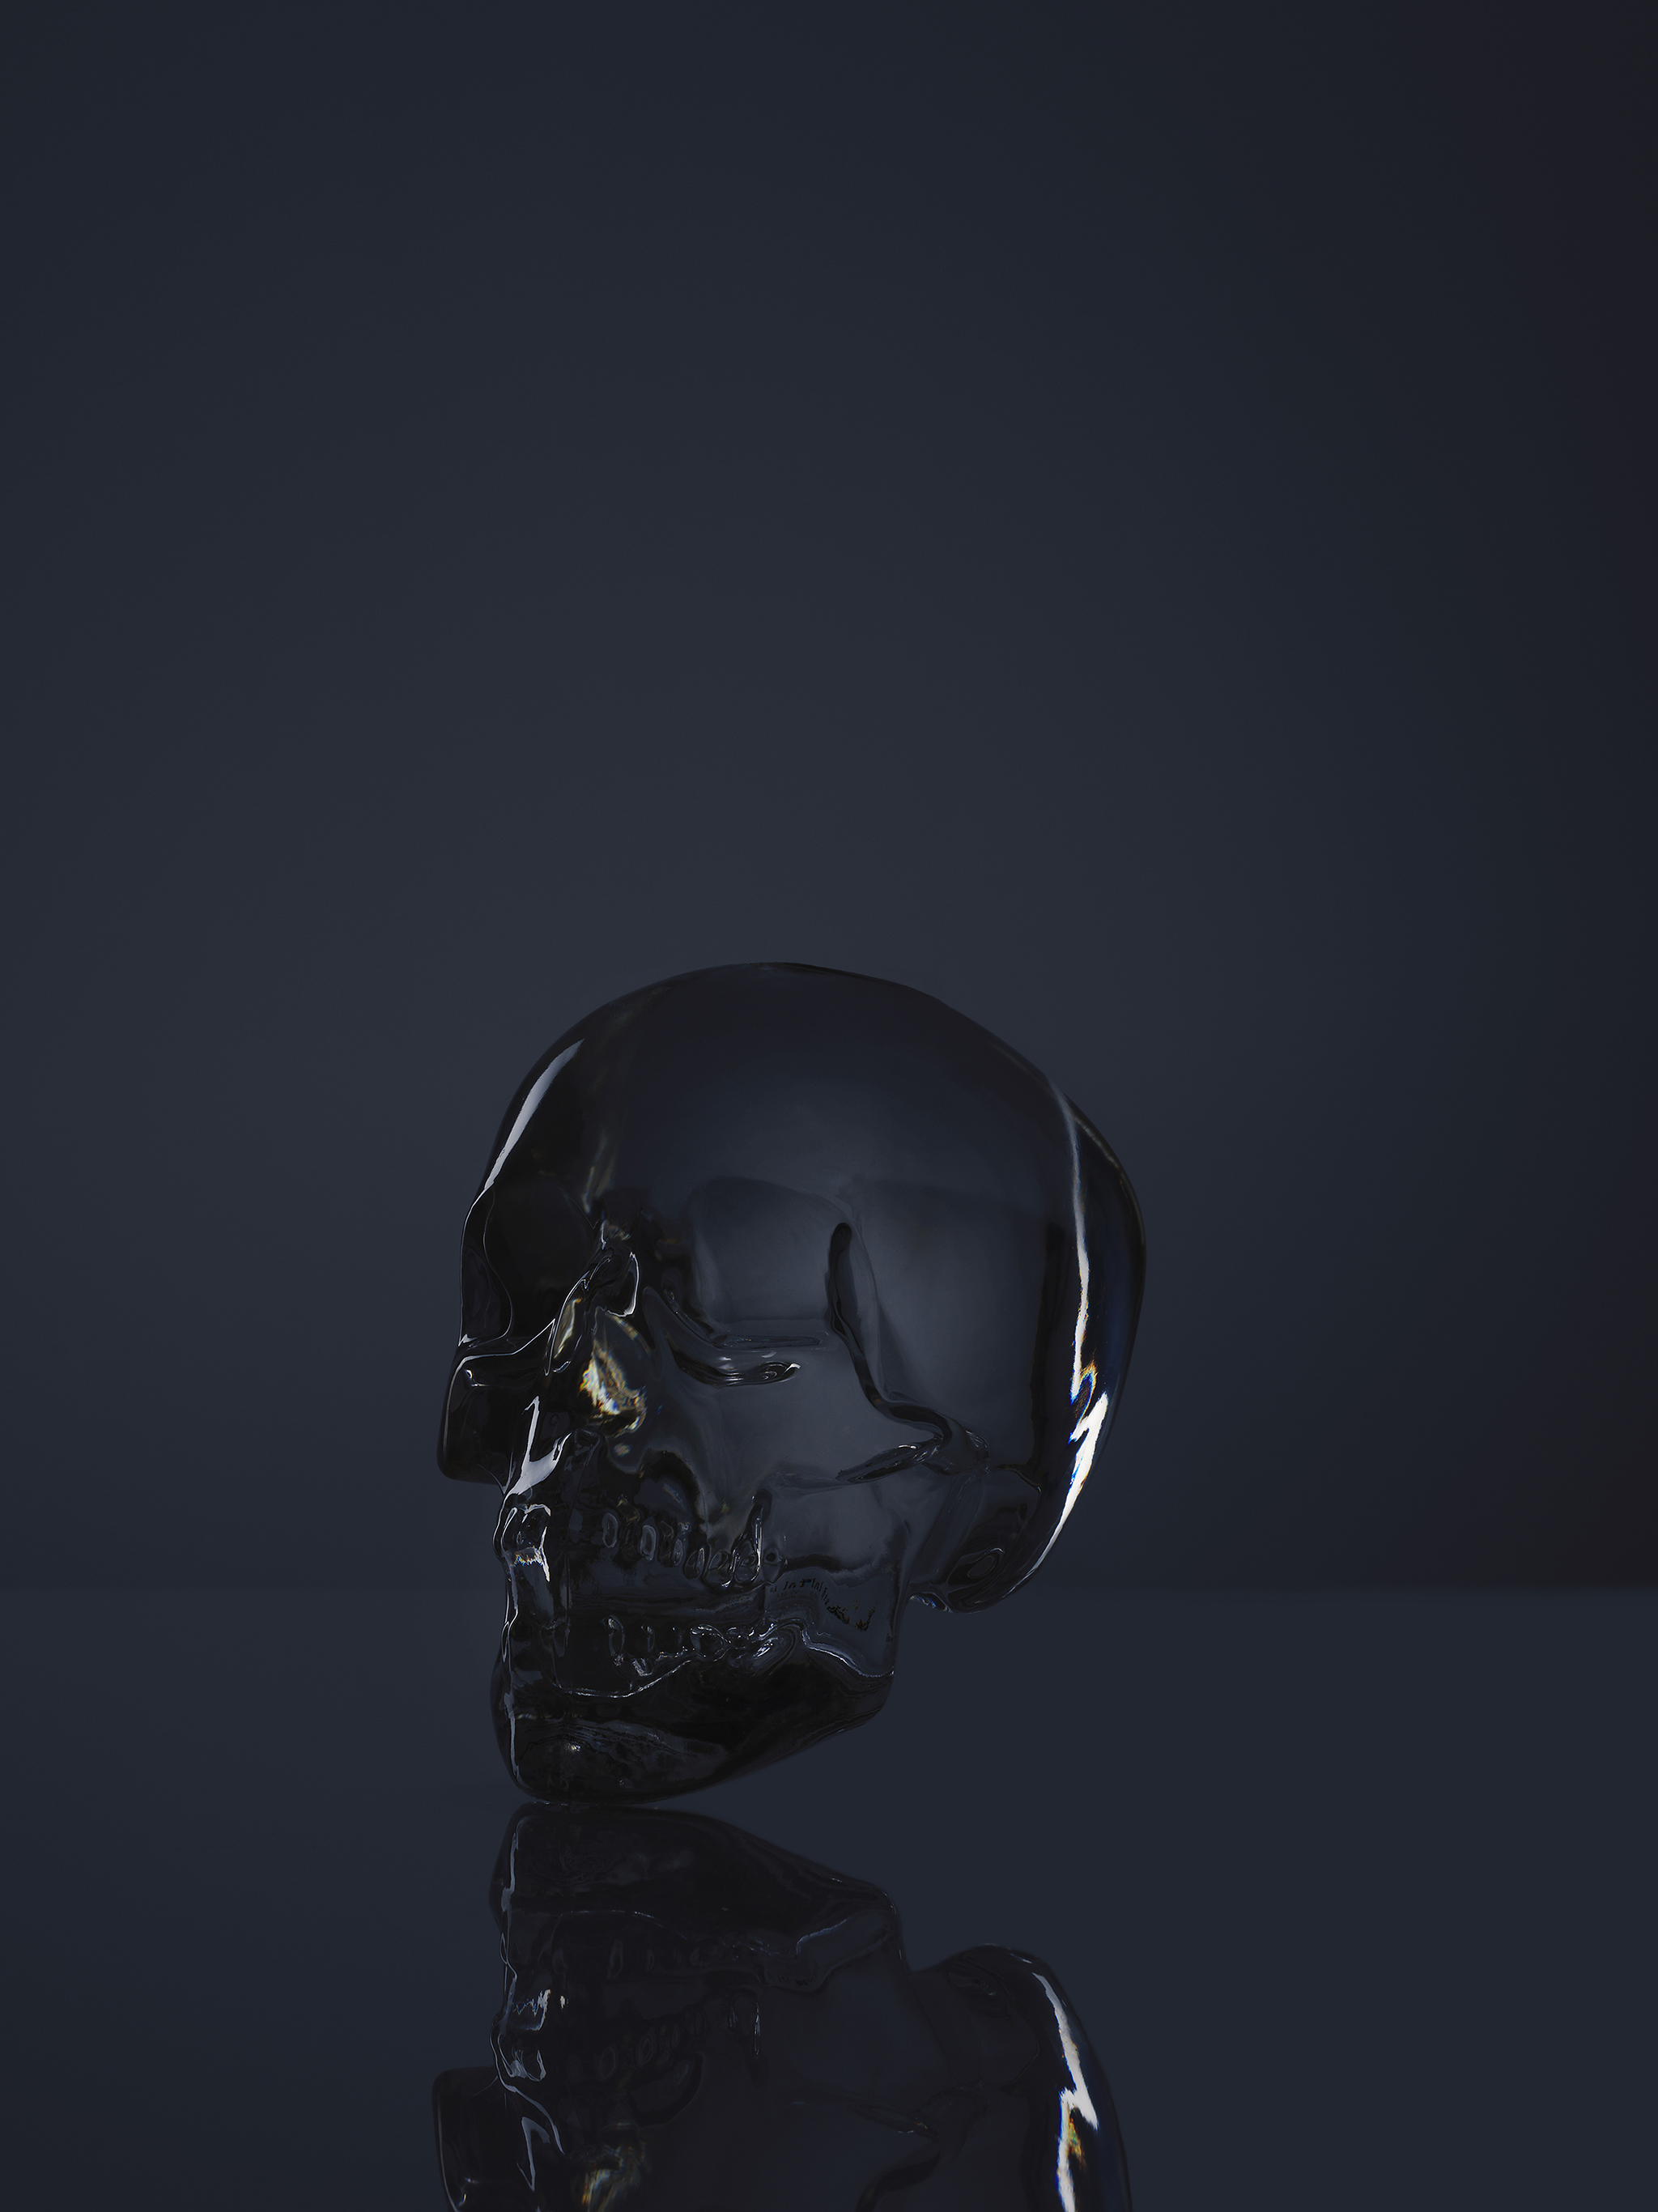 Glass Skull